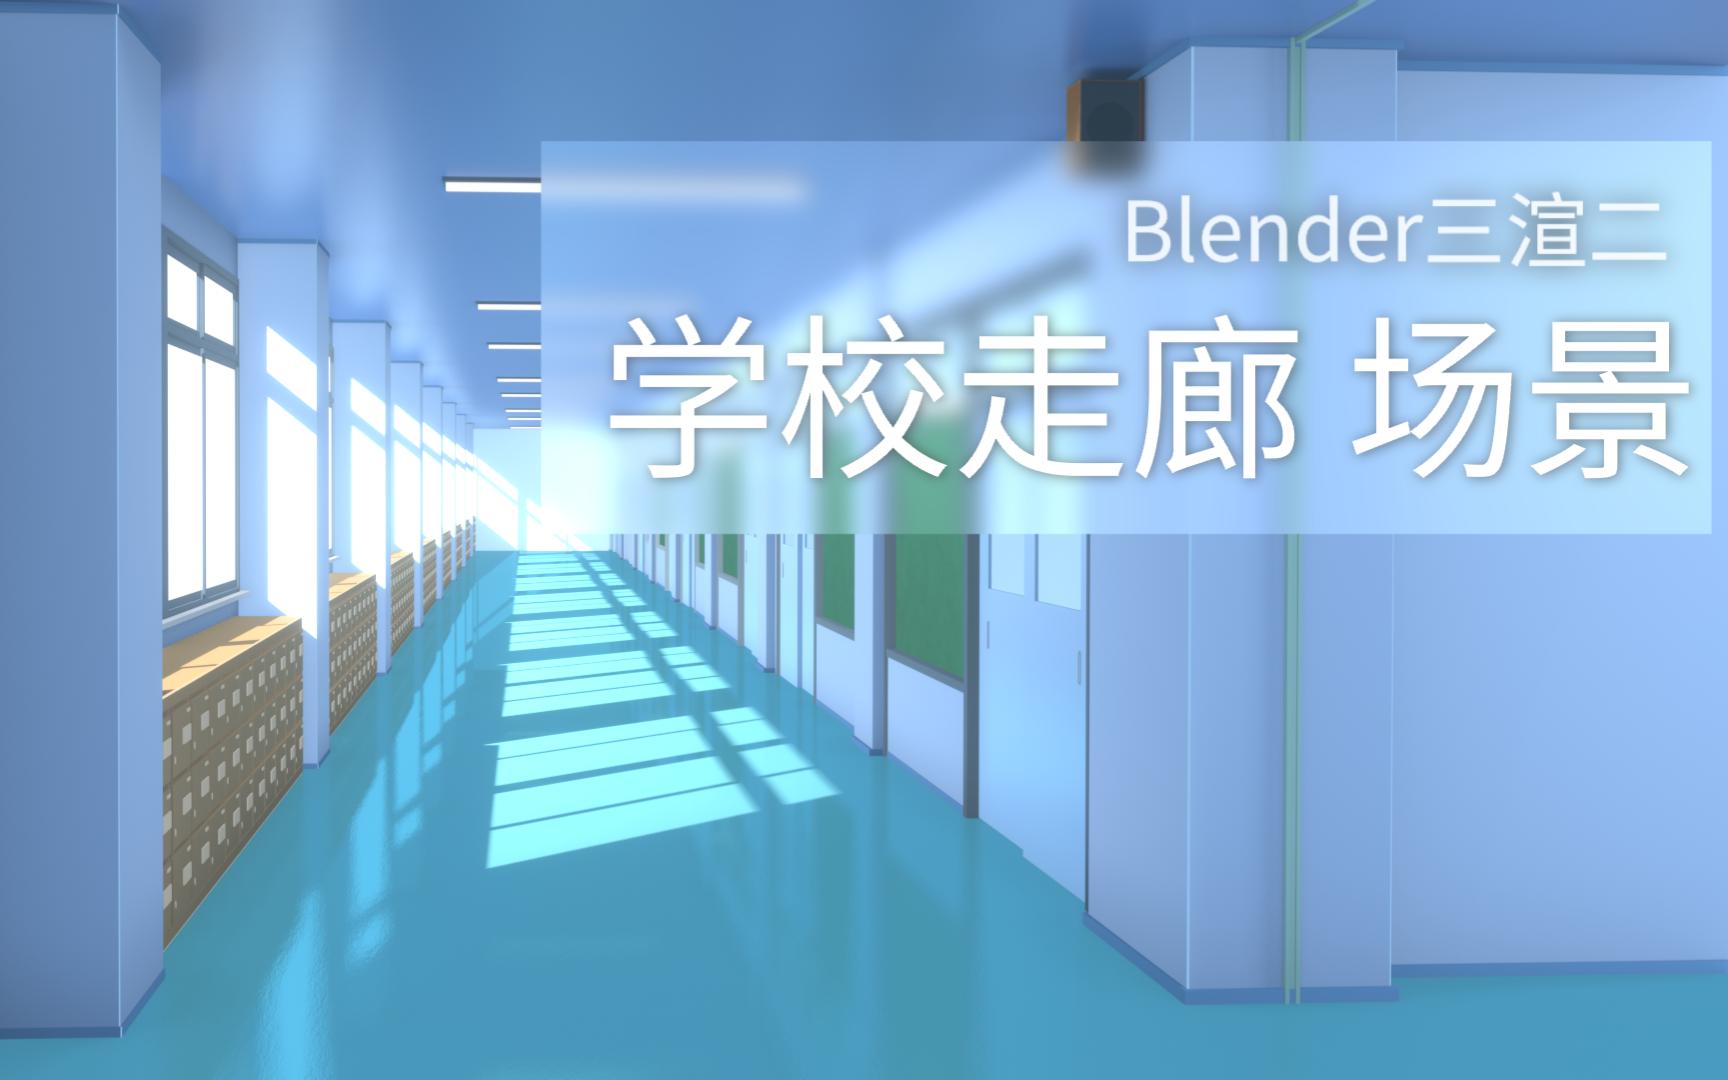 【Blender三渲二】学校走廊场景 30倍速完整流程